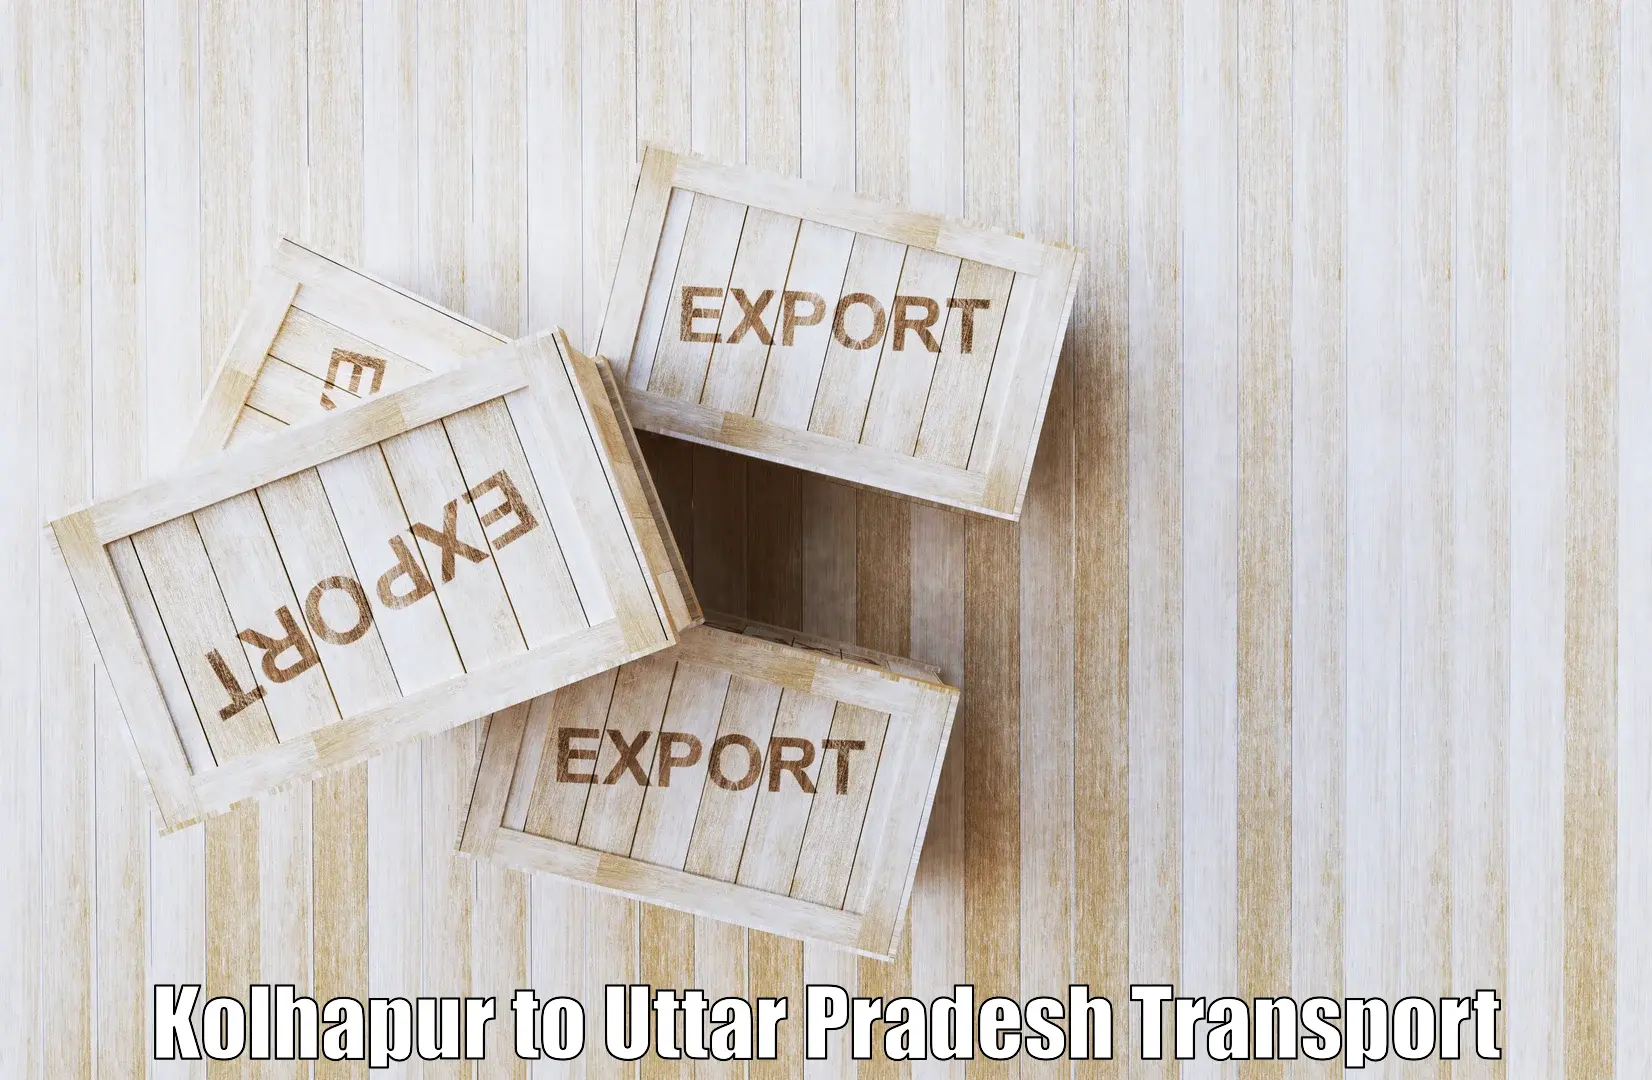 Two wheeler transport services Kolhapur to Pratapgarh